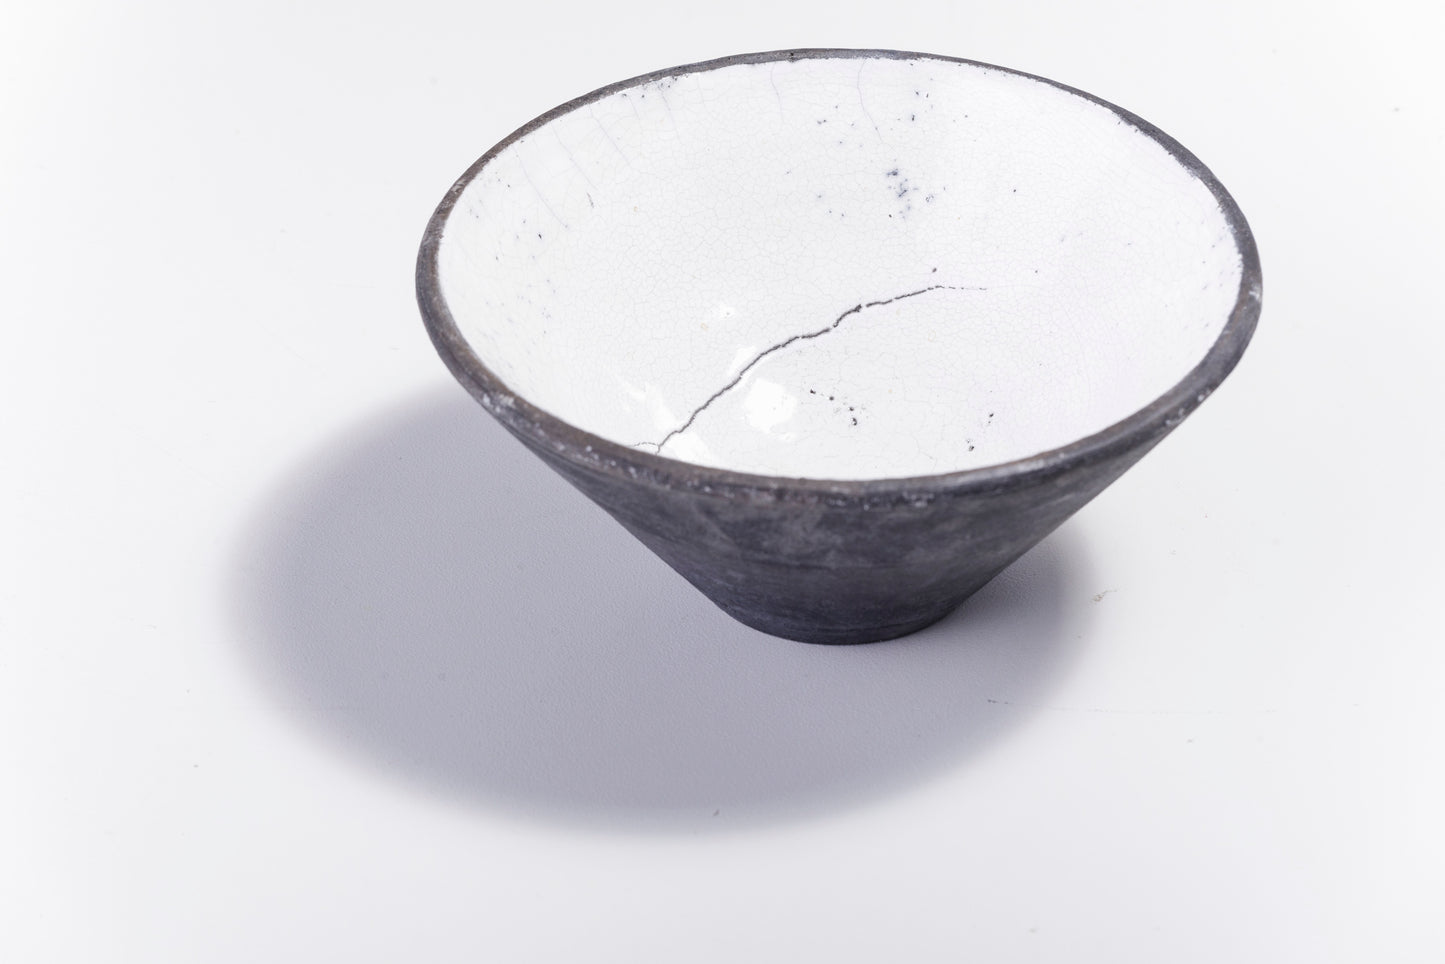 Japanese Wu Bowl Raku Ceramics Crackle Black White